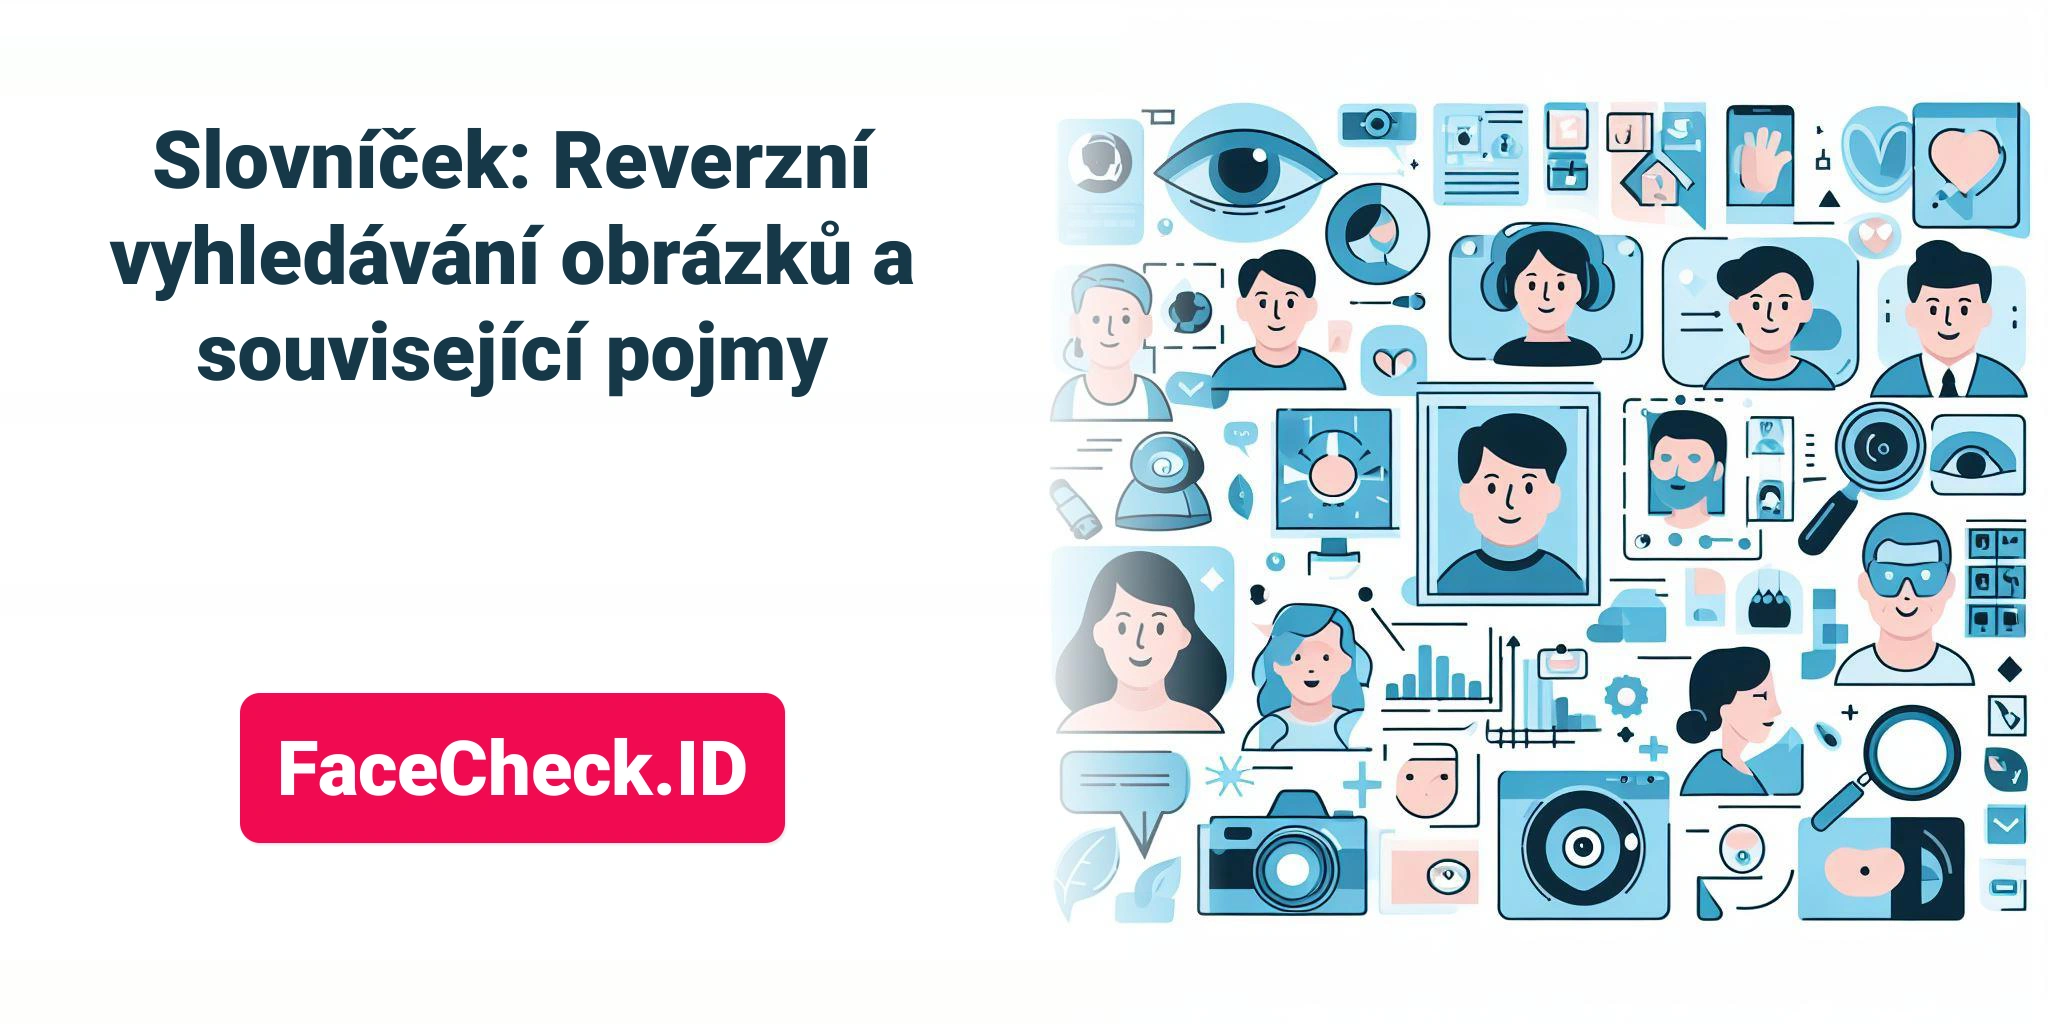 Slovníček: Reverzní vyhledávání obrázků a související pojmy FaceCheck.ID